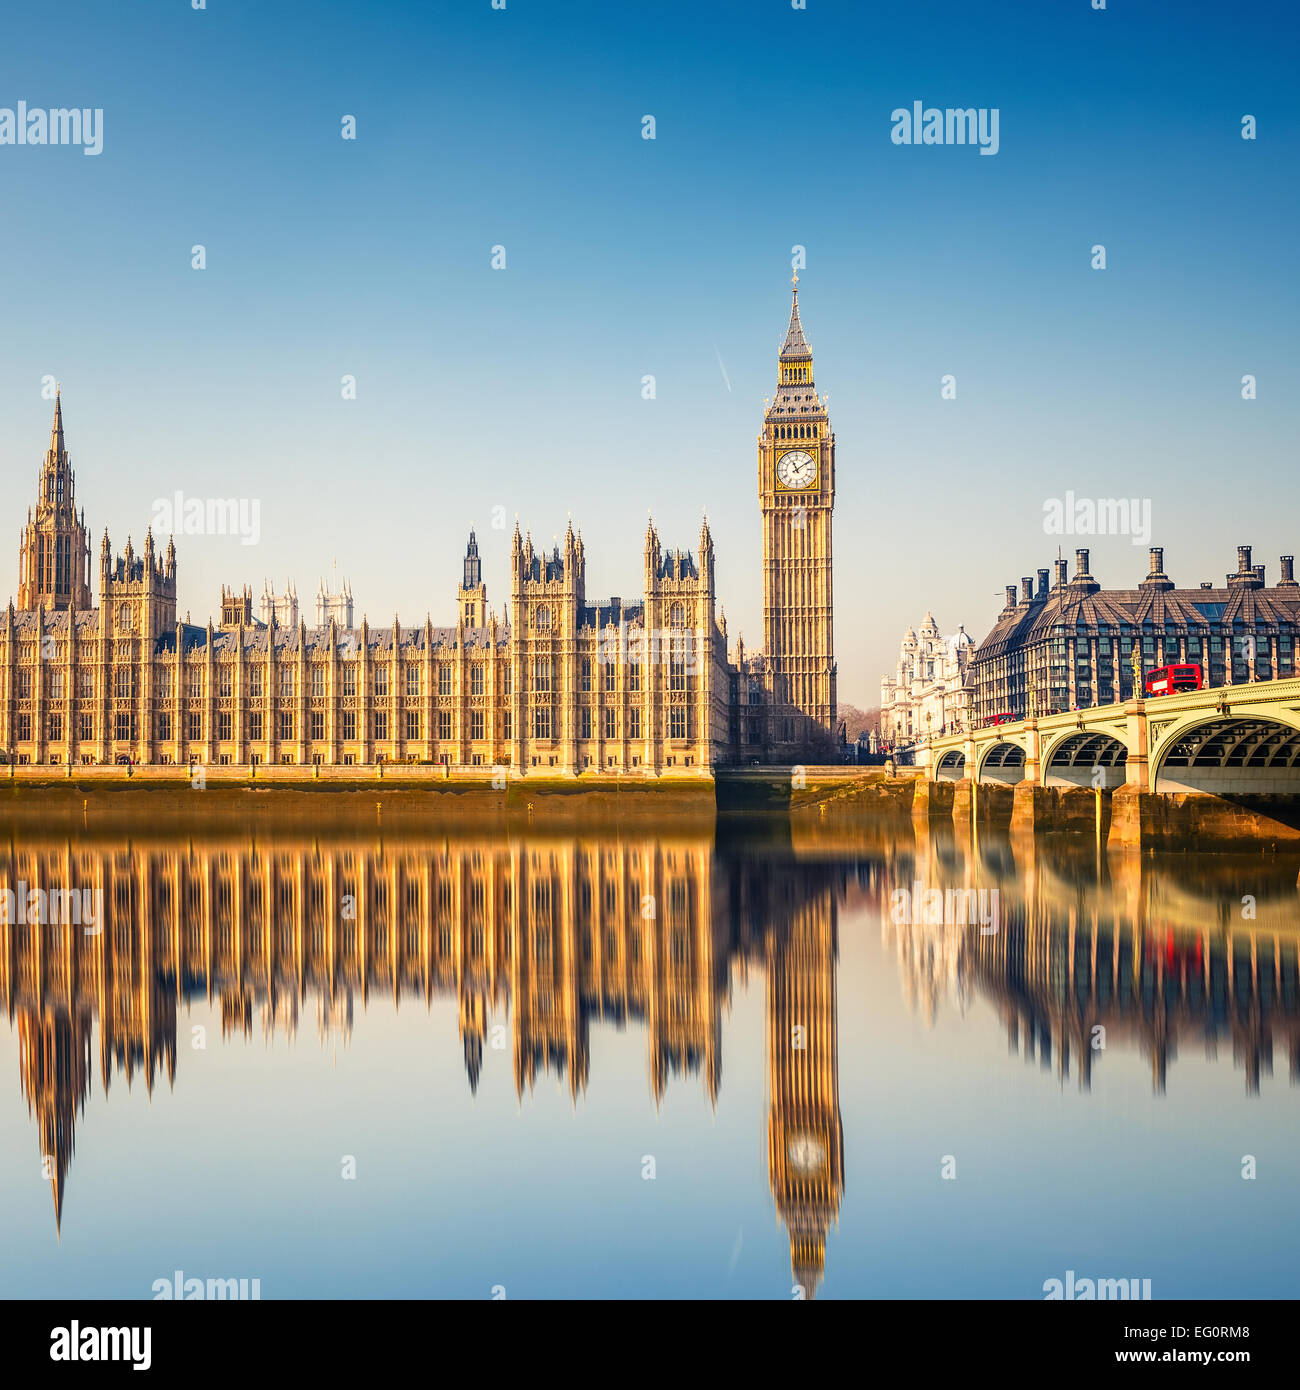 Big Ben et des chambres du parlement, Londres Banque D'Images